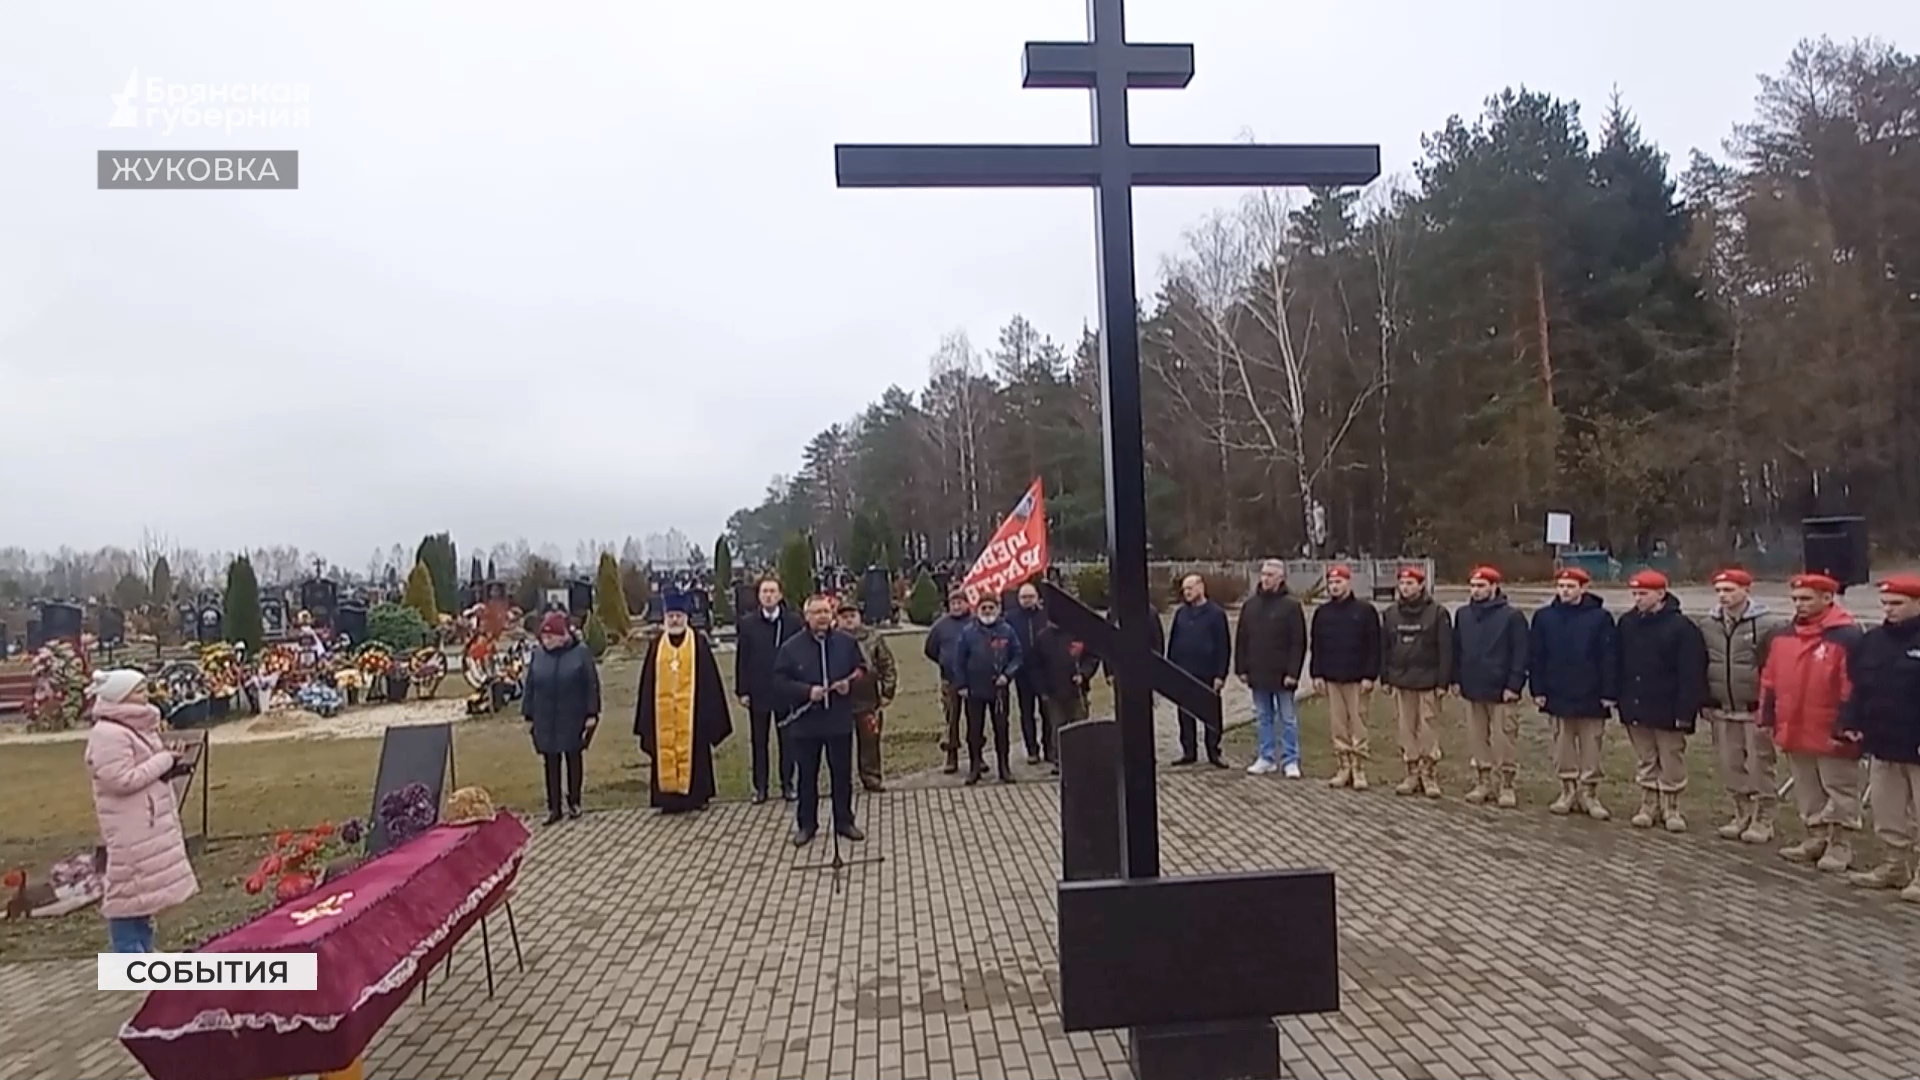 Останки 16 советских воинов перезахоронили на кладбище в Жуковке Брянской области